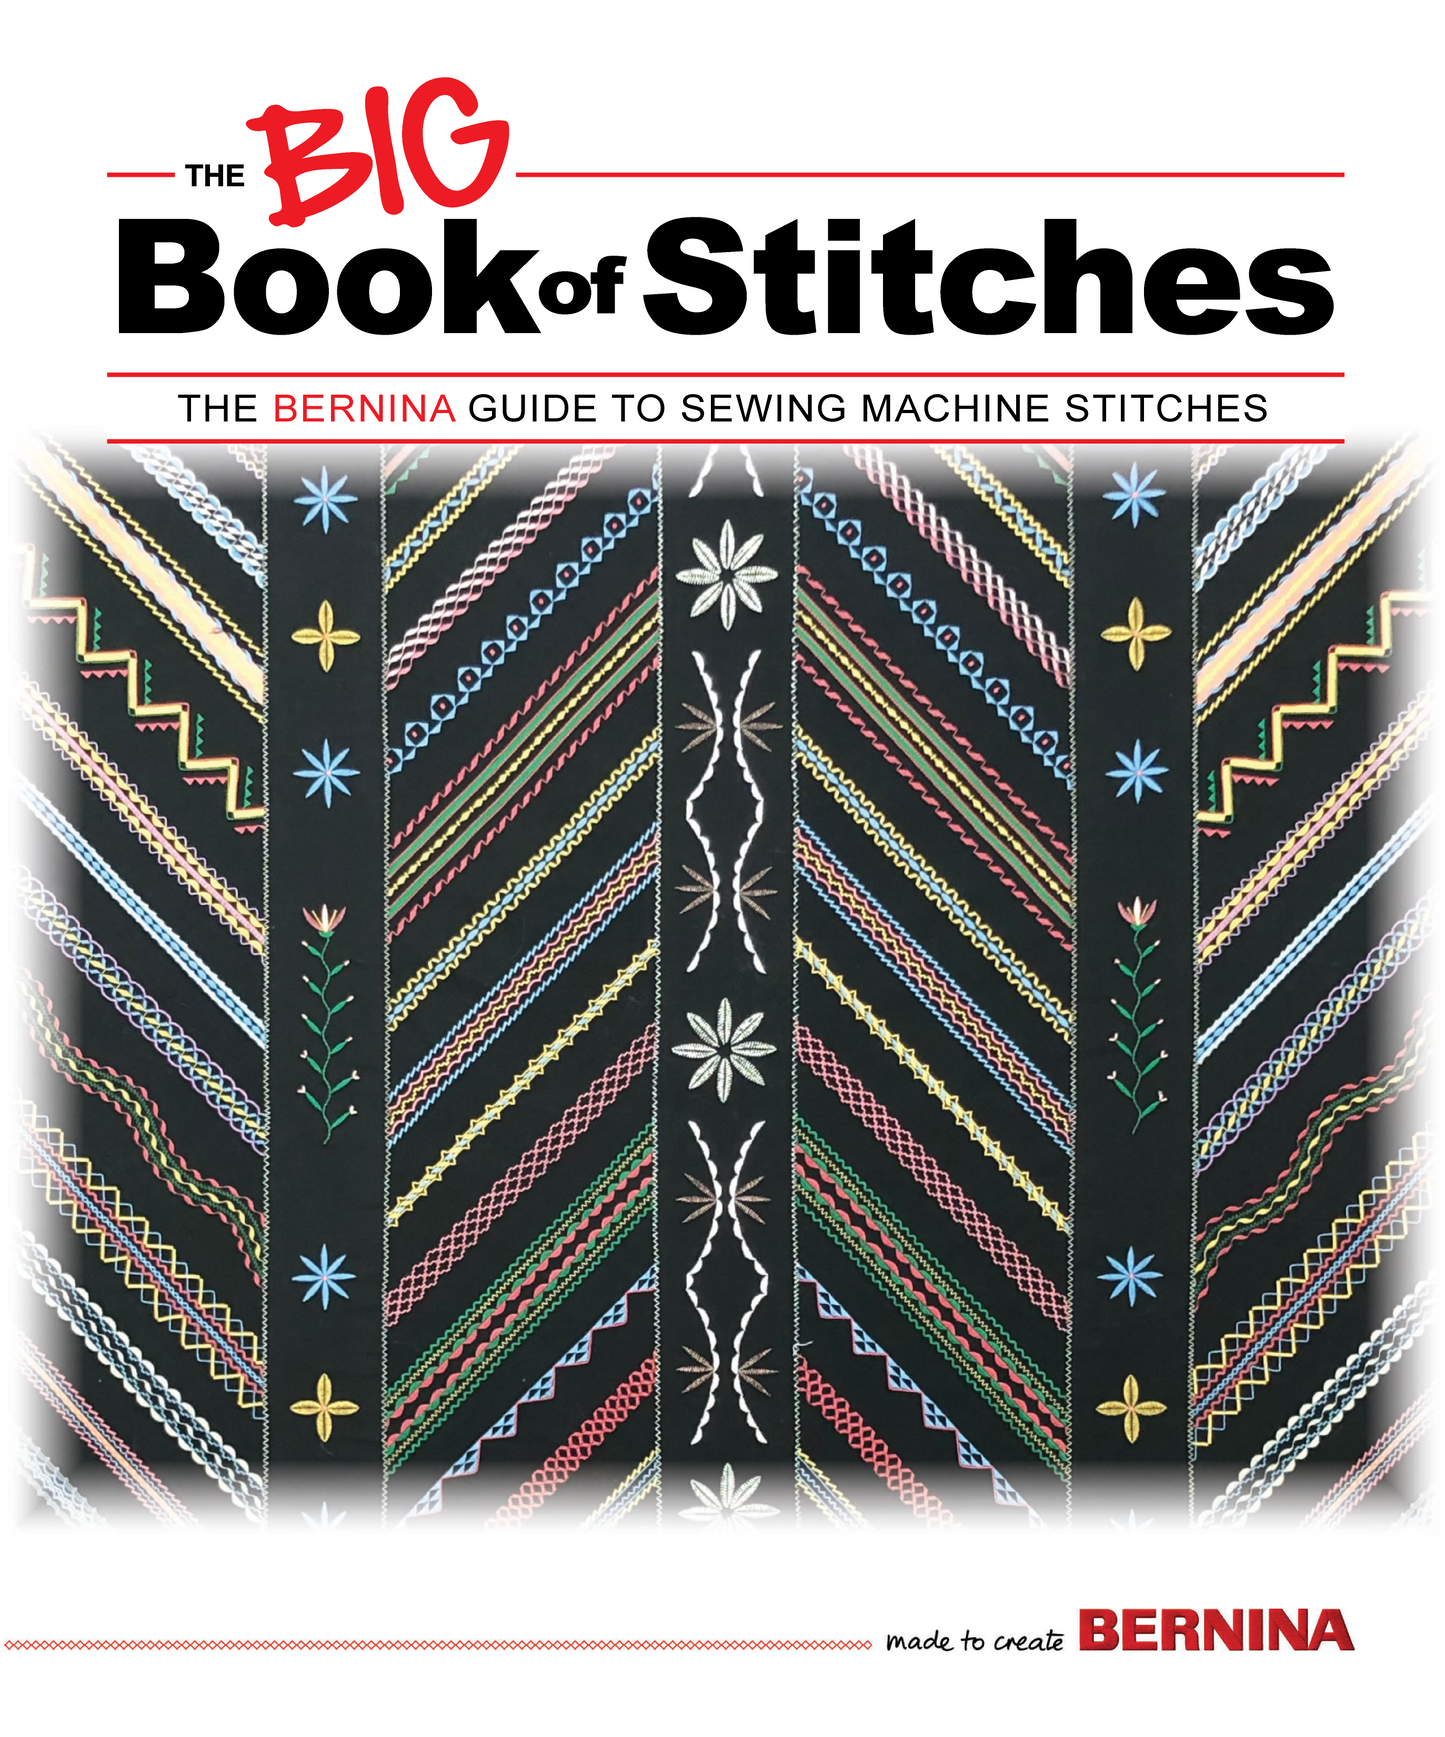 The Bernina Big Book of Stitches